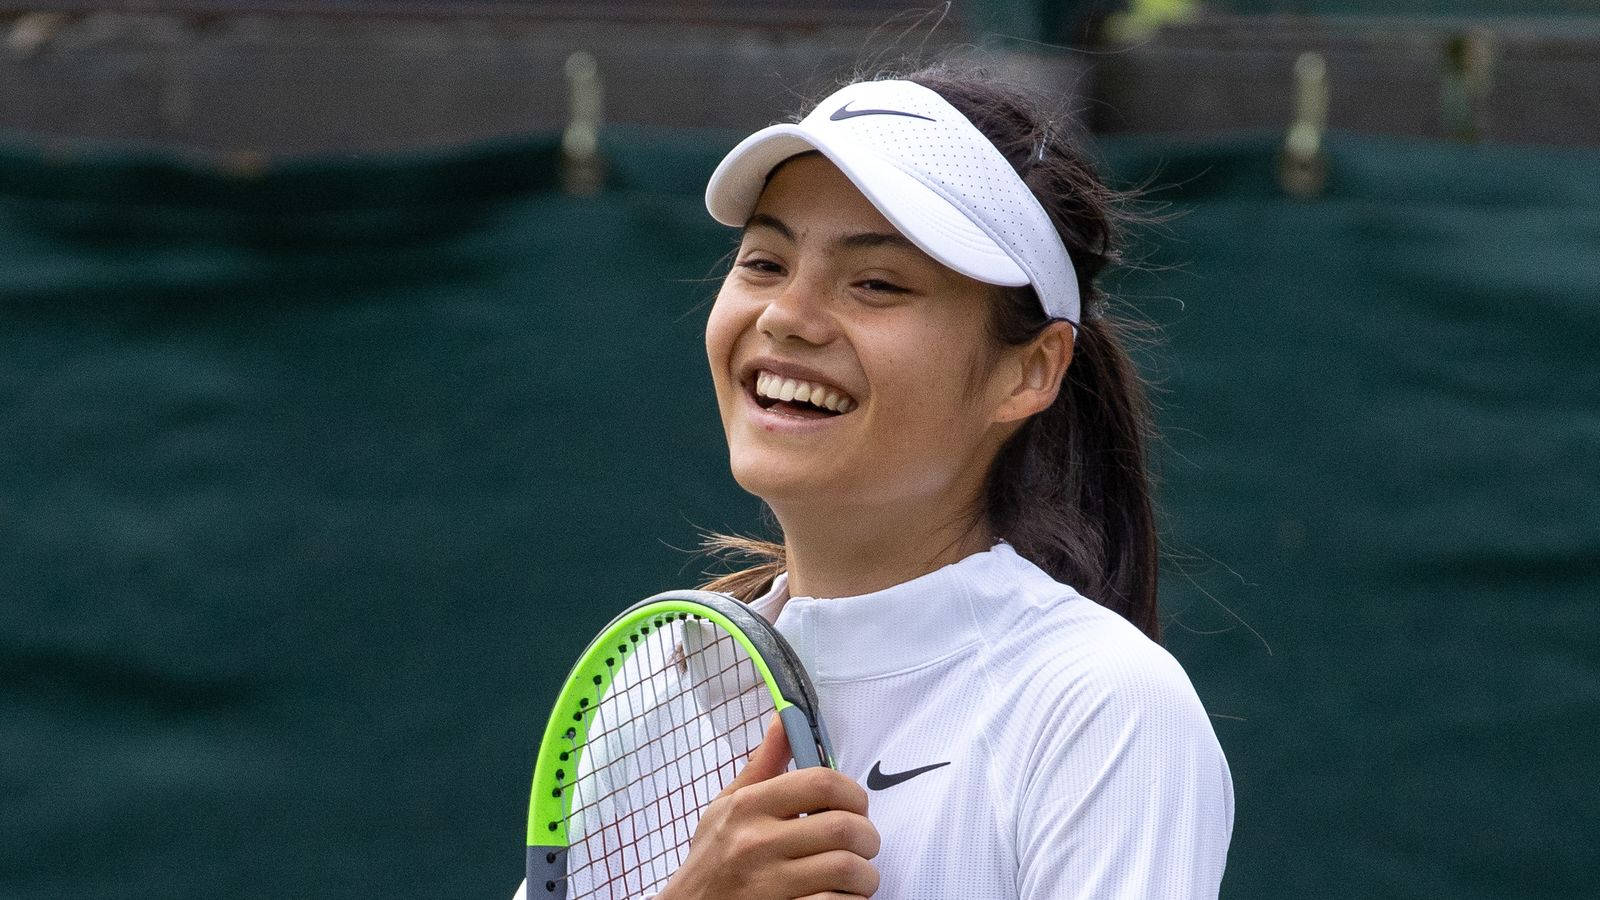 British Tennis Prodigy - Emma Raducanu’s Delightful Smile Background